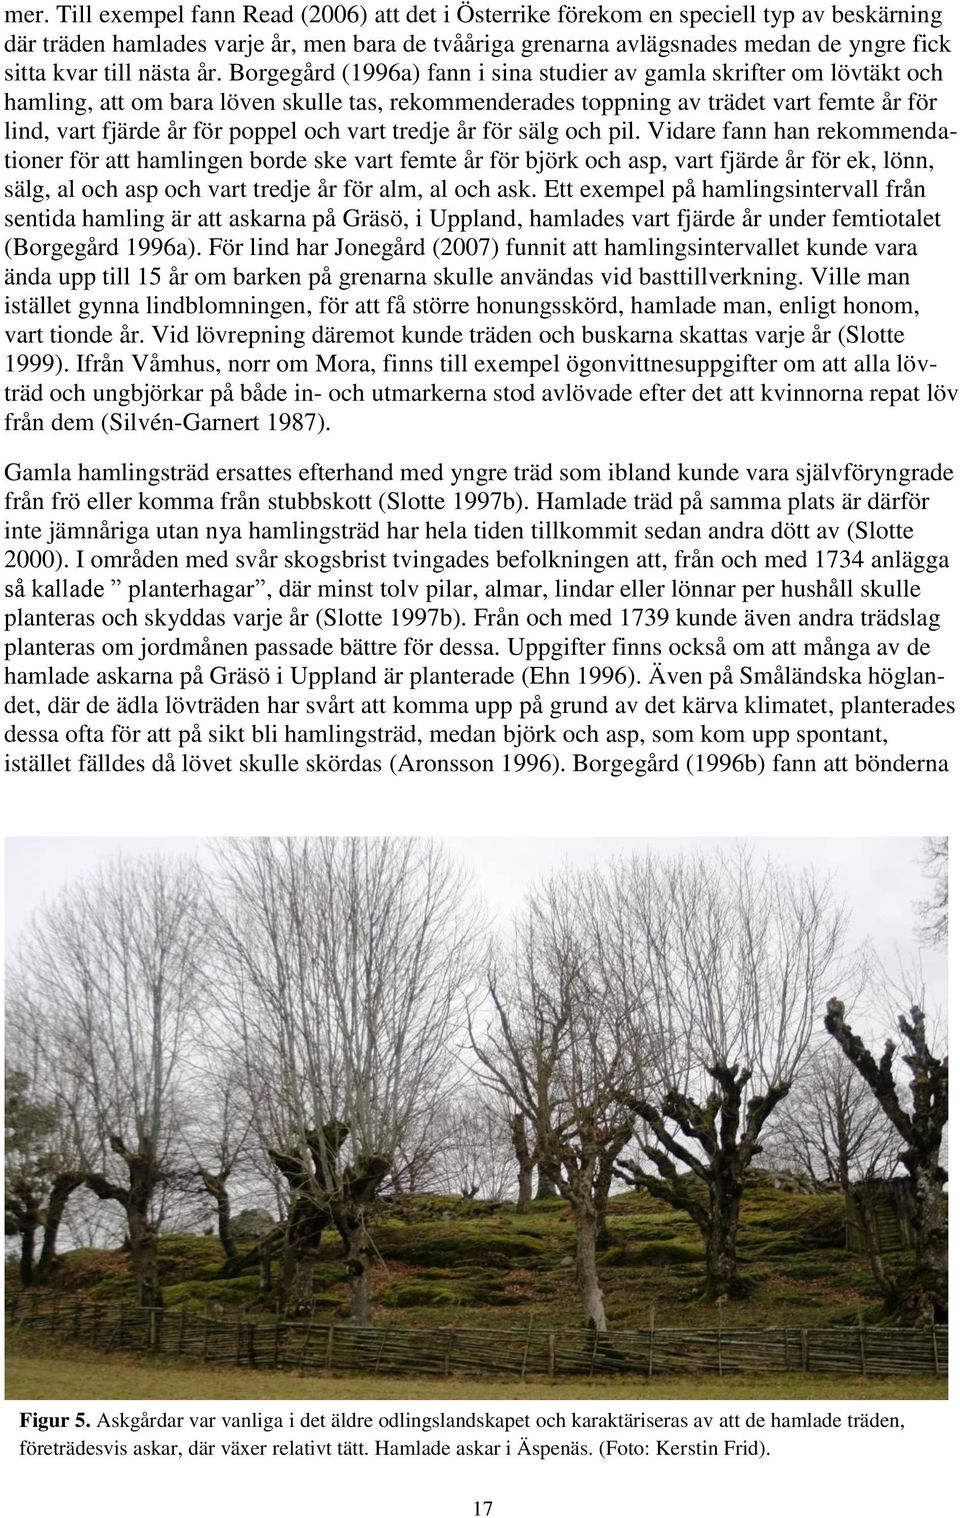 Borgegård (1996a) fann i sina studier av gamla skrifter om lövtäkt och hamling, att om bara löven skulle tas, rekommenderades toppning av trädet vart femte år för lind, vart fjärde år för poppel och